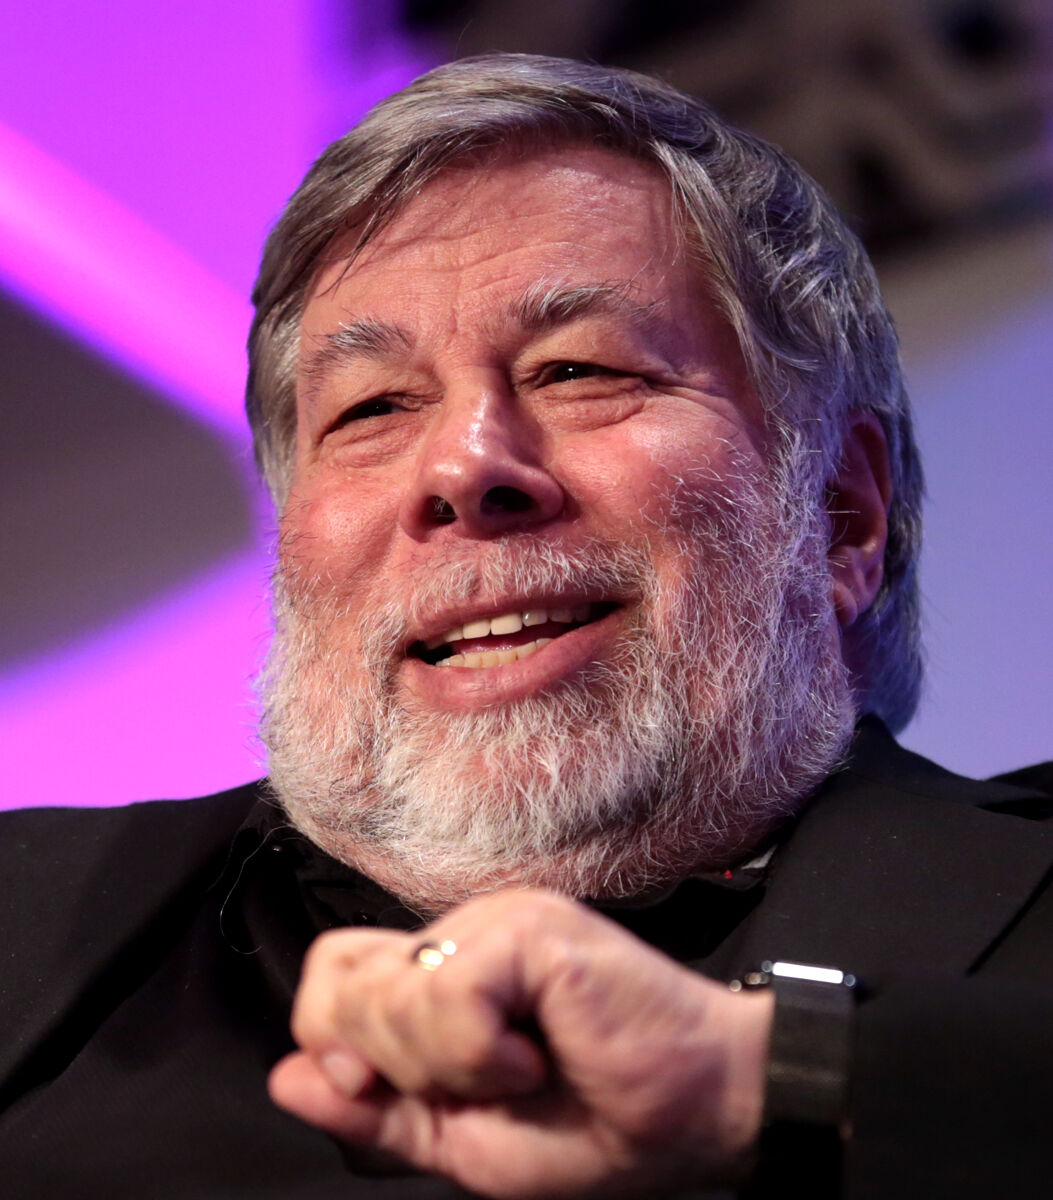 Steve Wozniak - Famous Computer Scientist